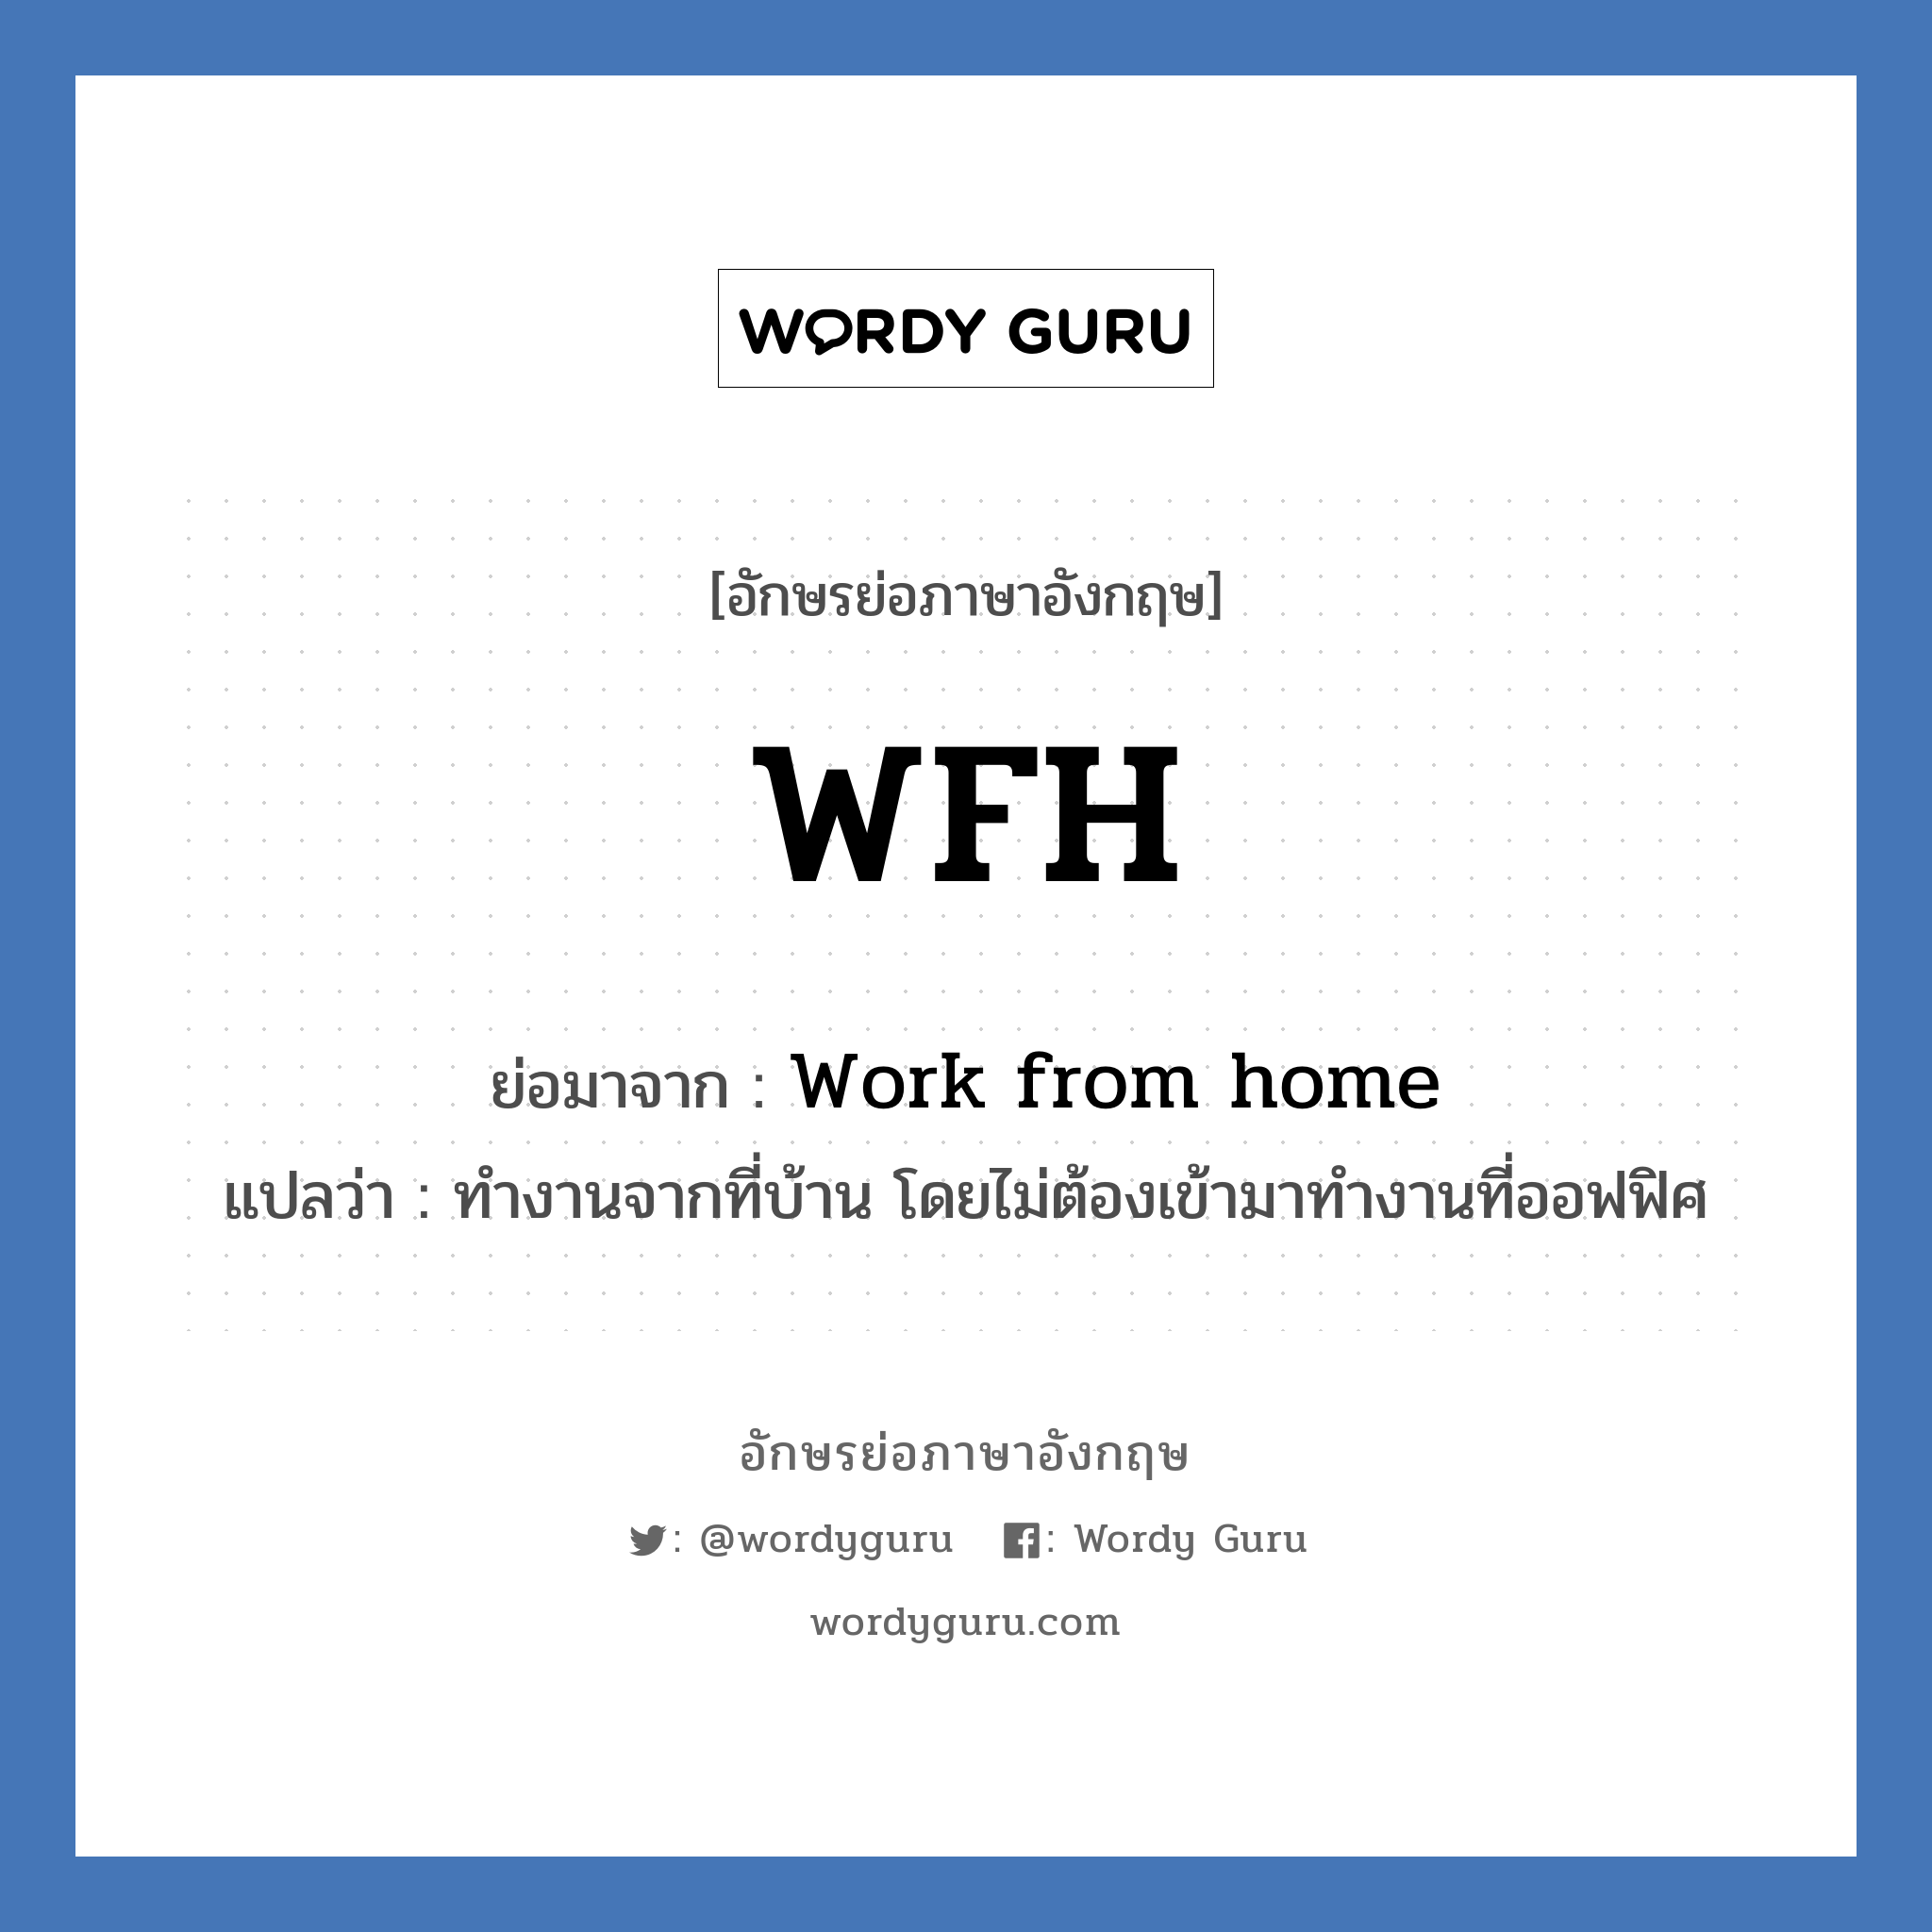 WFH ย่อมาจาก? แปลว่า?, อักษรย่อภาษาอังกฤษ WFH ย่อมาจาก Work from home แปลว่า ทำงานจากที่บ้าน โดยไม่ต้องเข้ามาทำงานที่ออฟฟิศ